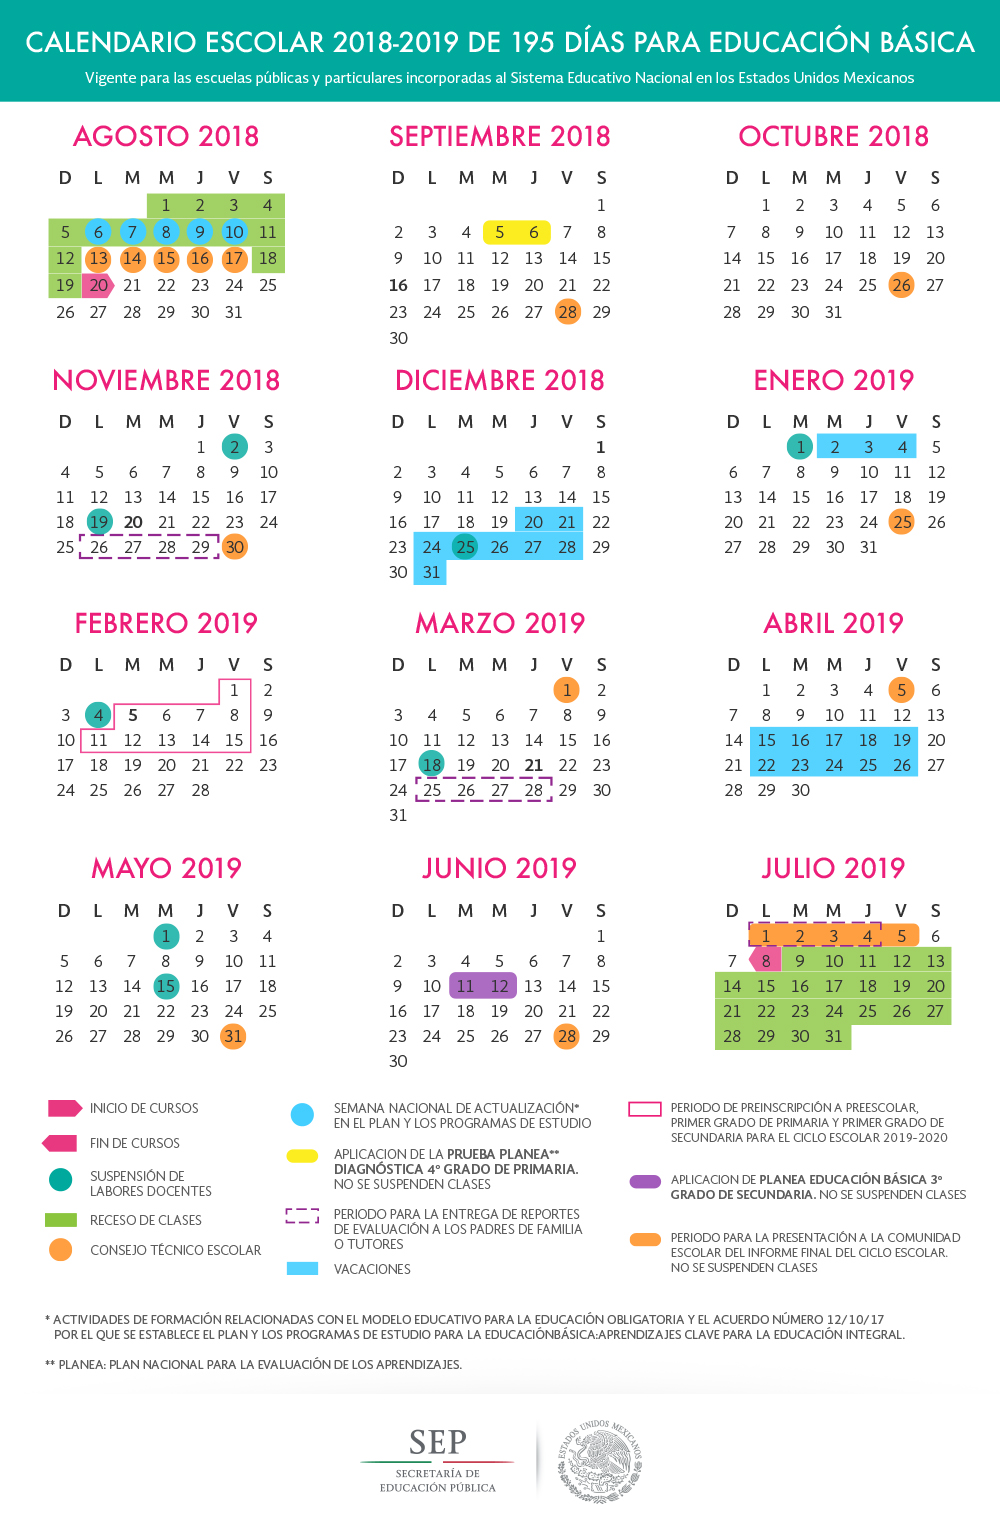 Calendario de 195 días para educación básica